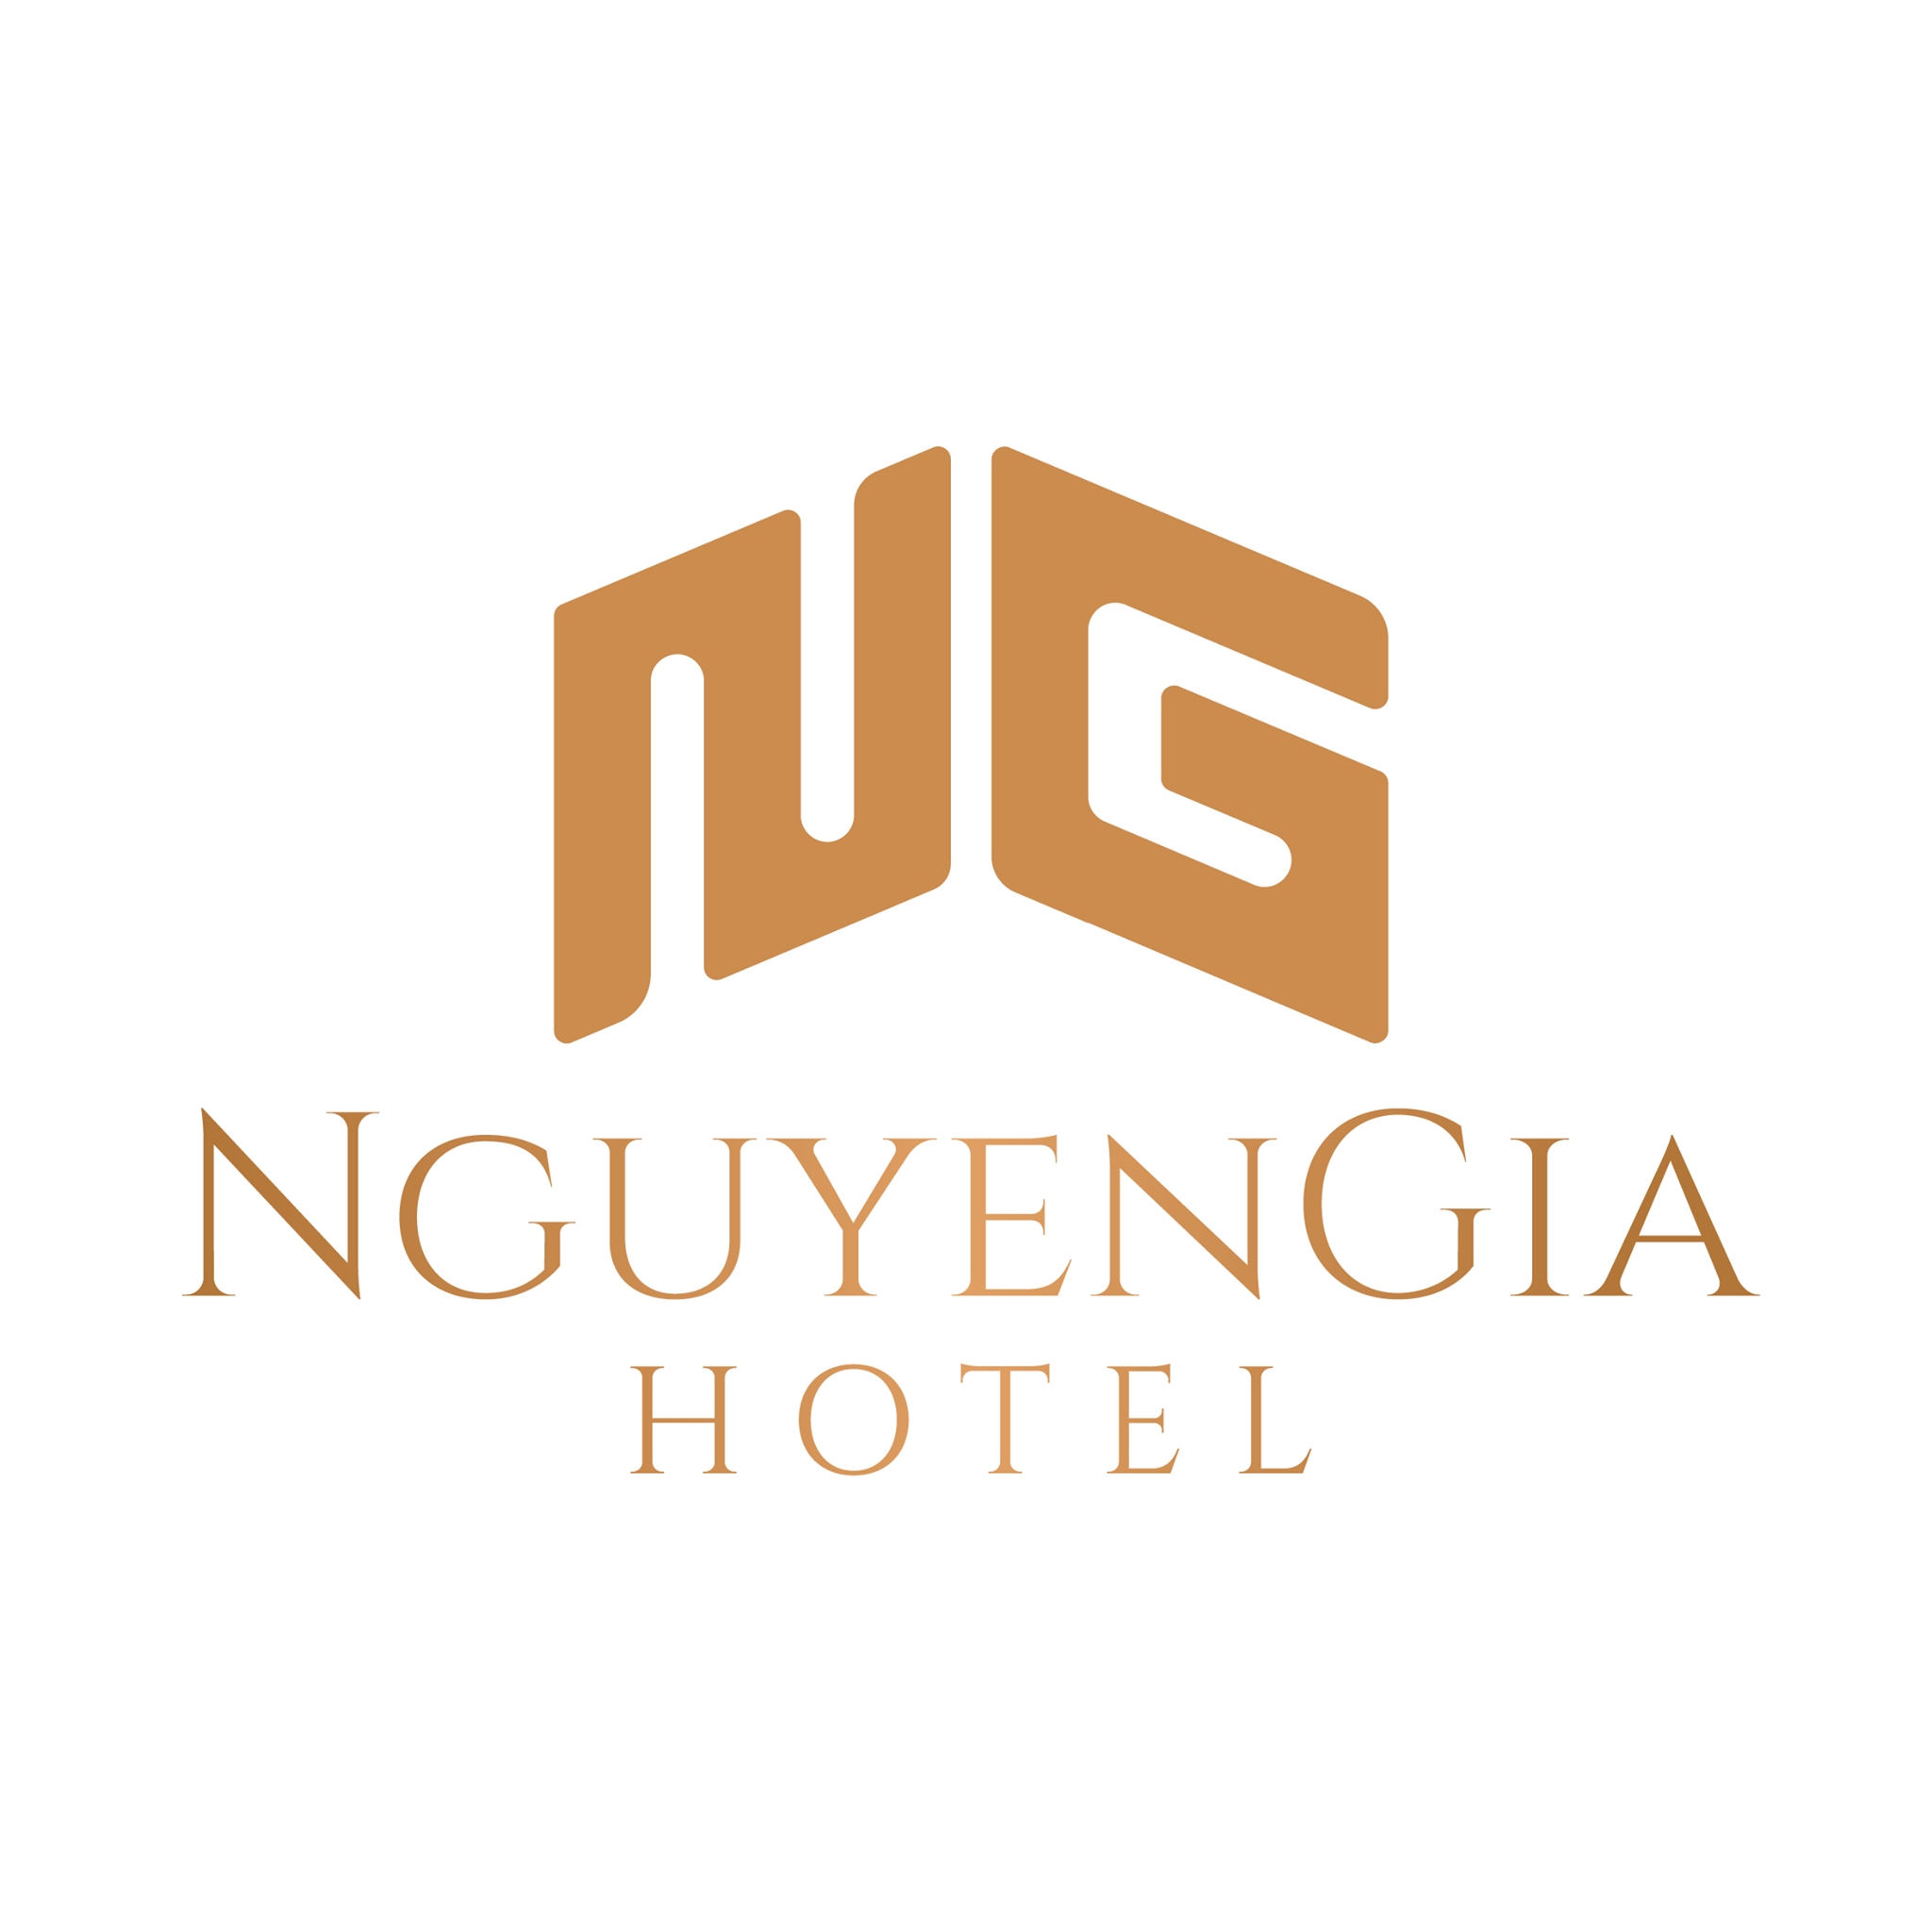 NGUYEN GIA HOTEL